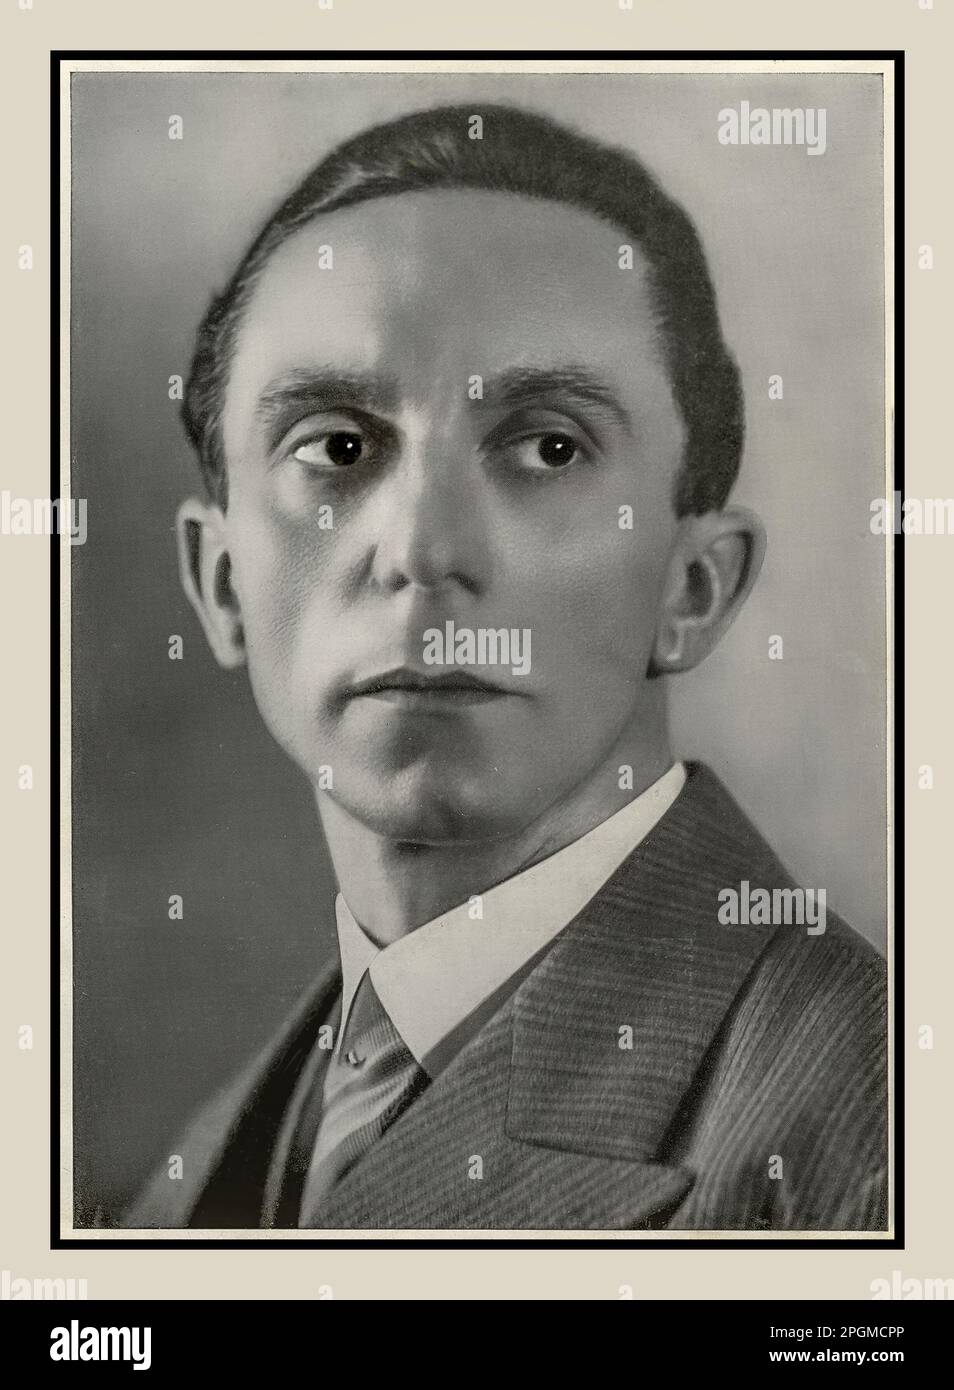 GOEBBELS 1930s Joseph Goebbels ritratto ufficiale in studio. Paul Joseph Goebbels era un politico tedesco nazista che era il Gauleiter di Berlino, capo propagandista per il partito nazista, e poi Ministro Reich di Propaganda dal 1933 al 1945 quando si suicidò nel bunker di Hitler Berlino per sfuggire agli arresti delle forze alleate in avanzamento. Foto Stock